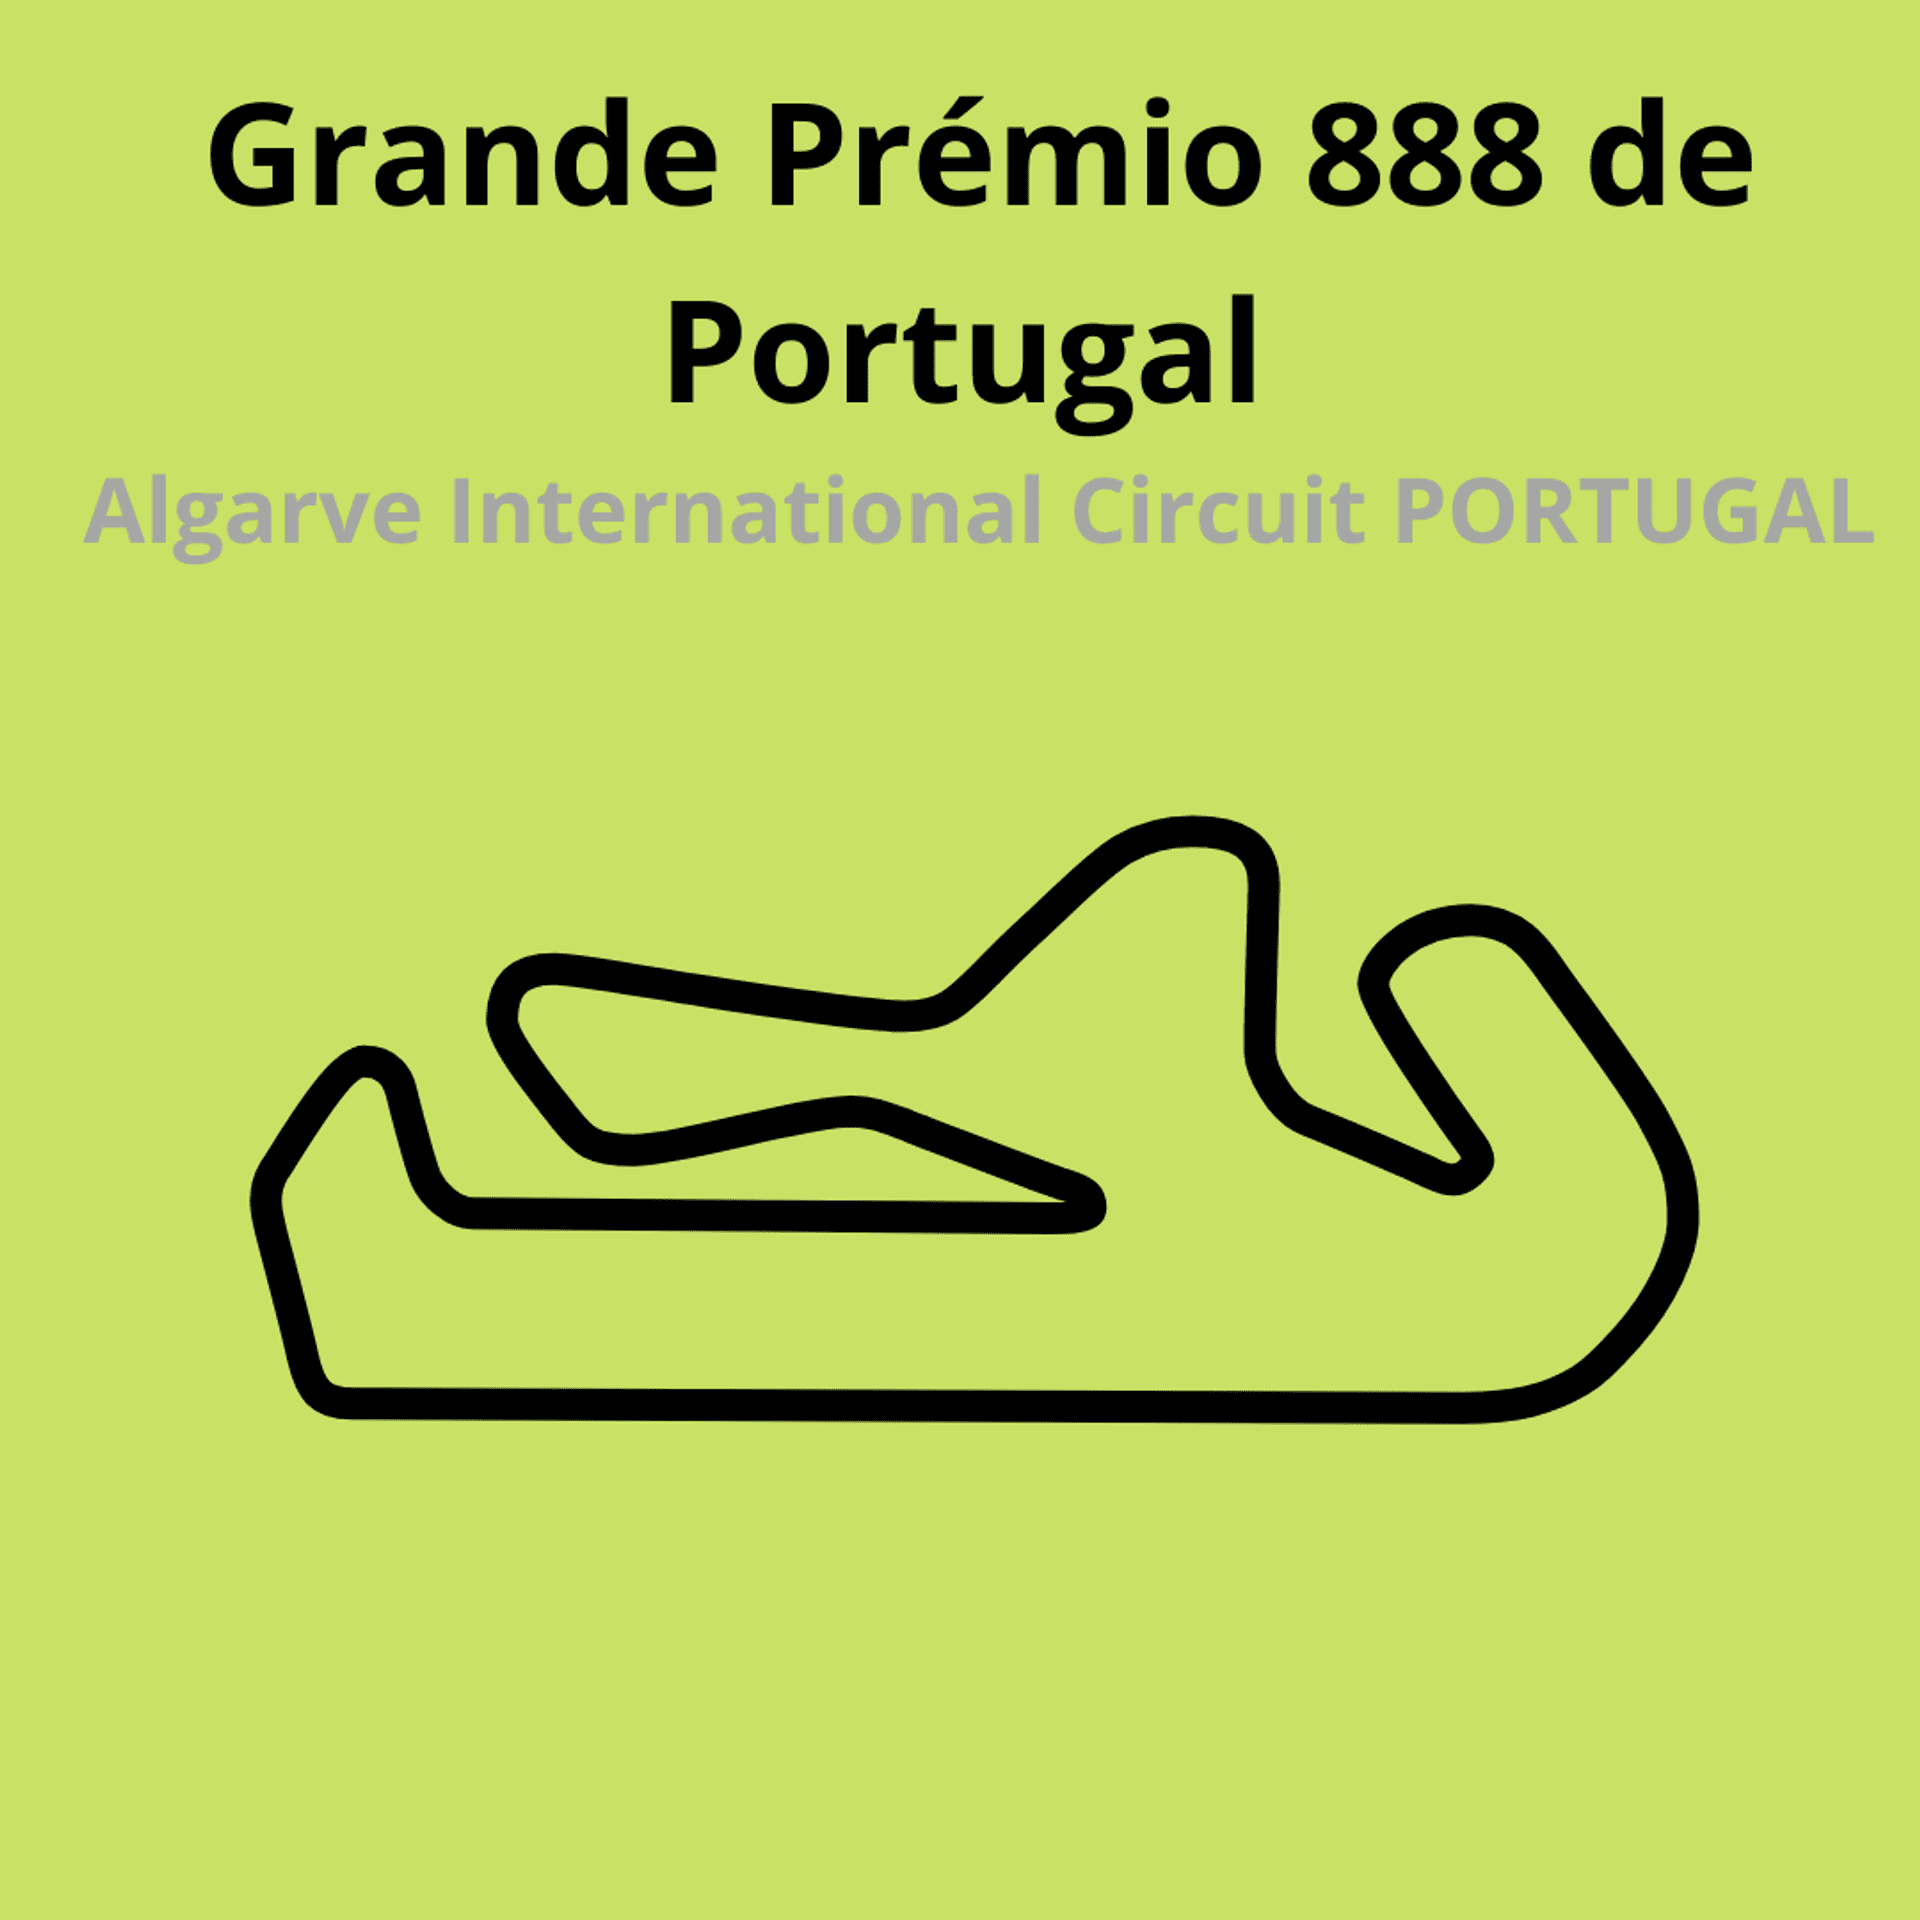 Gran Premio 888 de Portugal. Scopri tutte le gare del moto mondiale 2021.Le caratteristiche di ogni circuito, i record e difficoltà.Segui insieme a noi tutte le gare di Tony Arbolino nella sua nuova avventura in Moto2